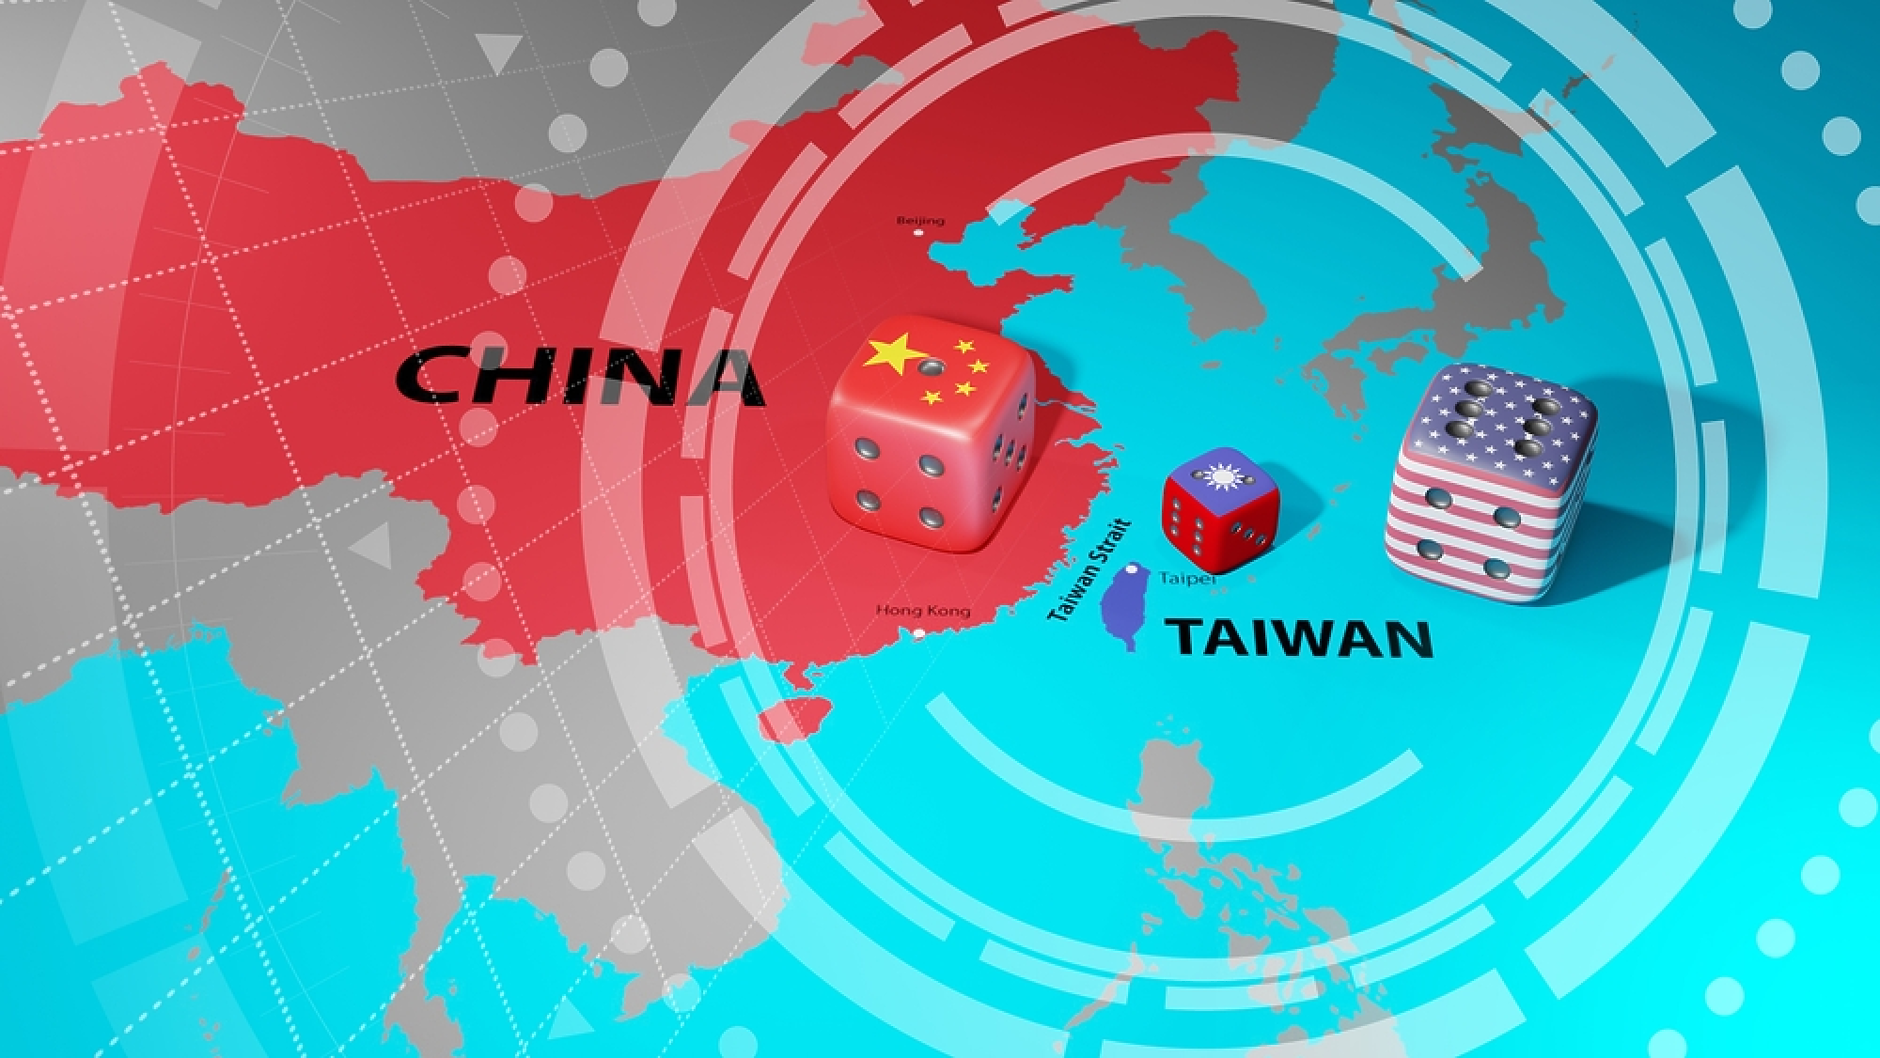 Китай започна военно учение край бреговете на Тайван. Тайпе: ще защитаваме суверенитета си